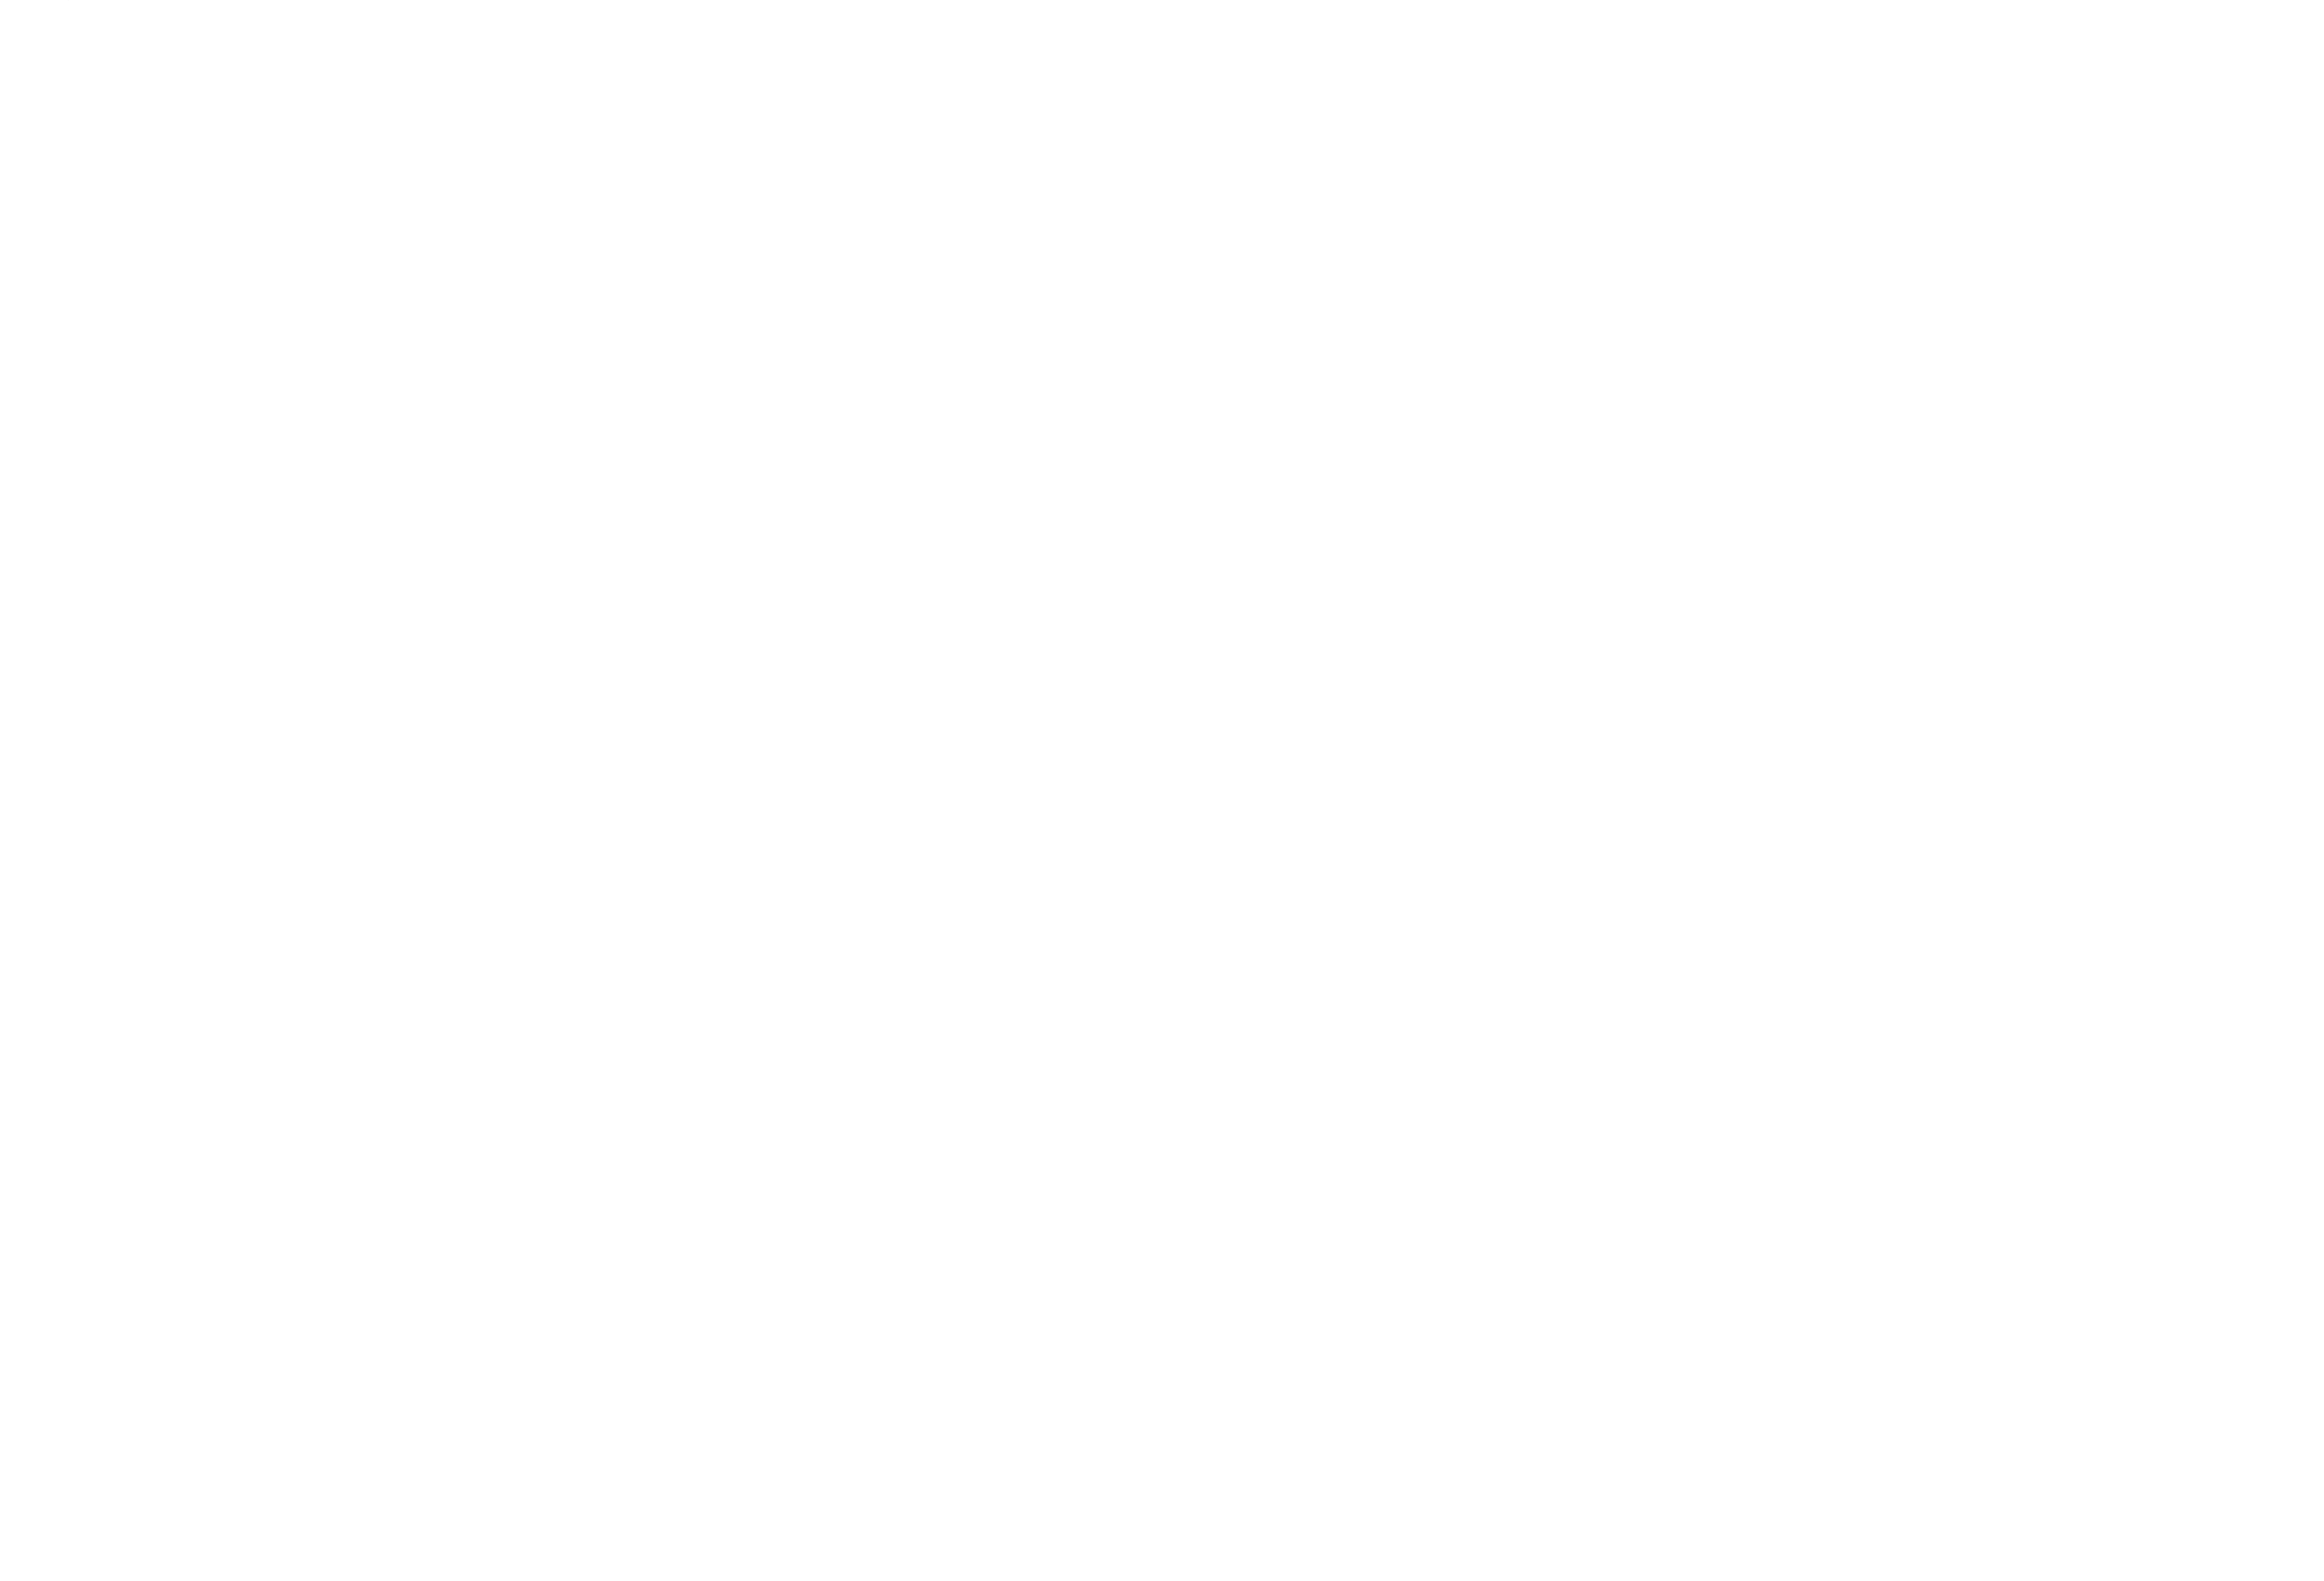 johannesfrank.com